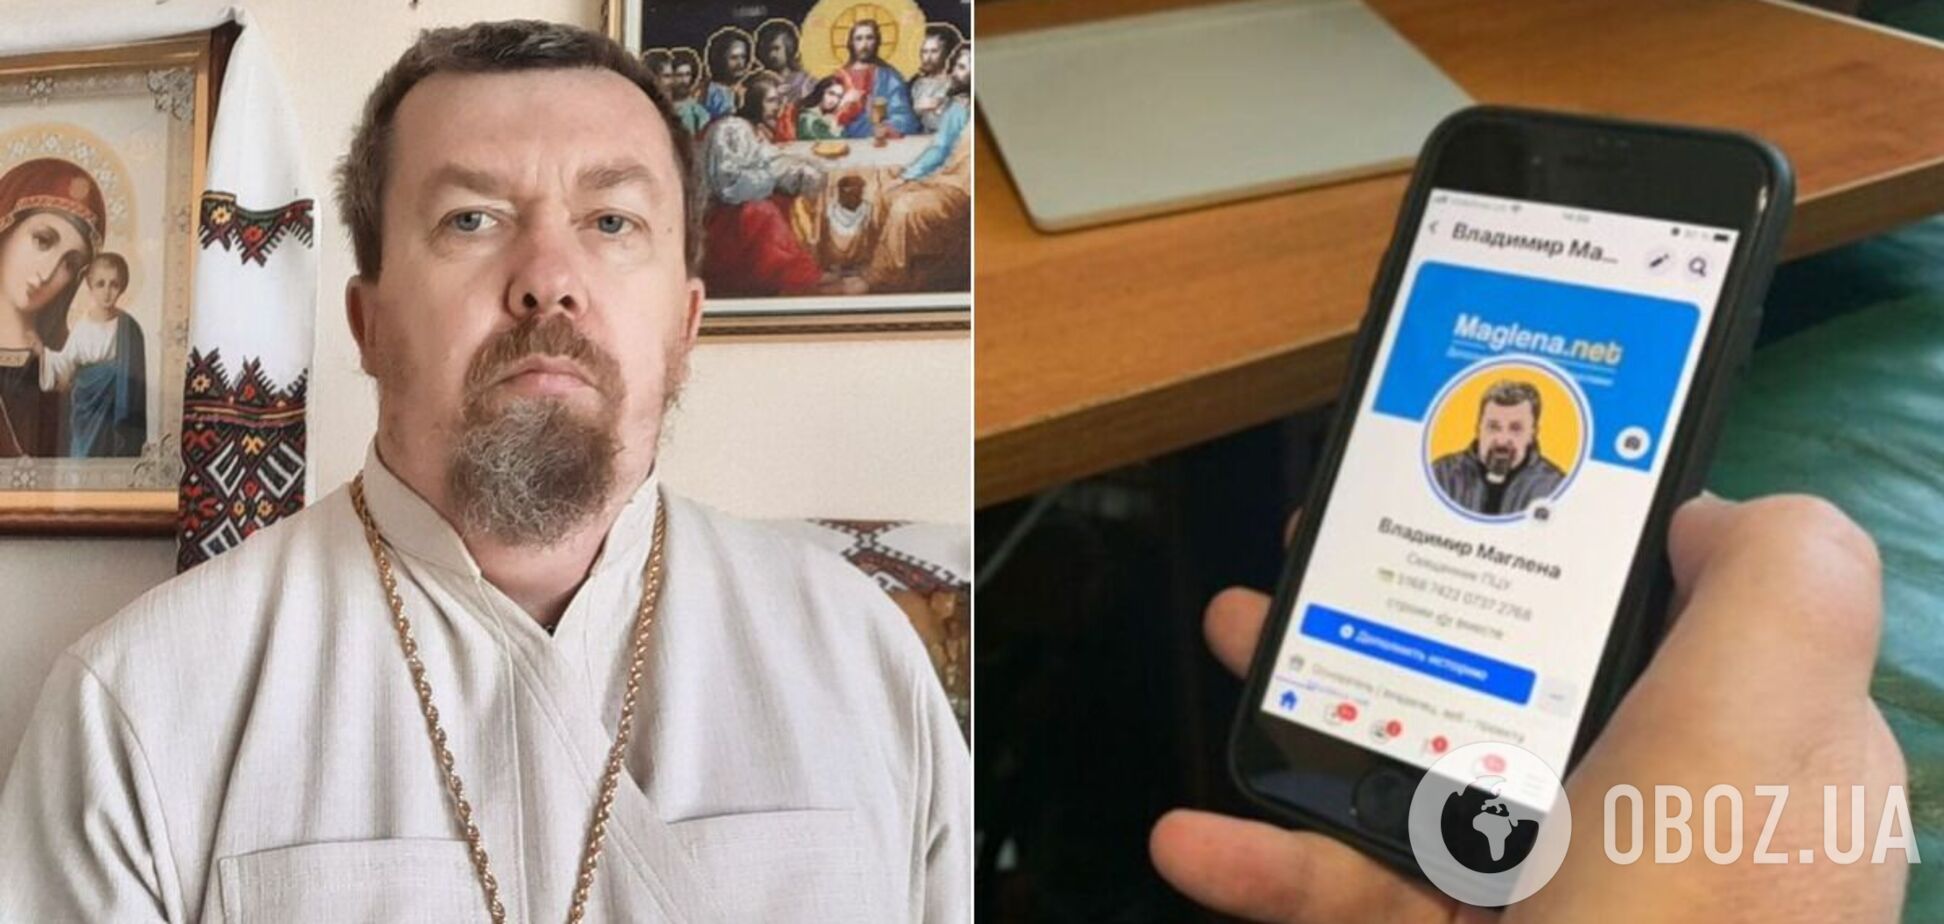 Священник Владимир Маглена исповедует через интернет